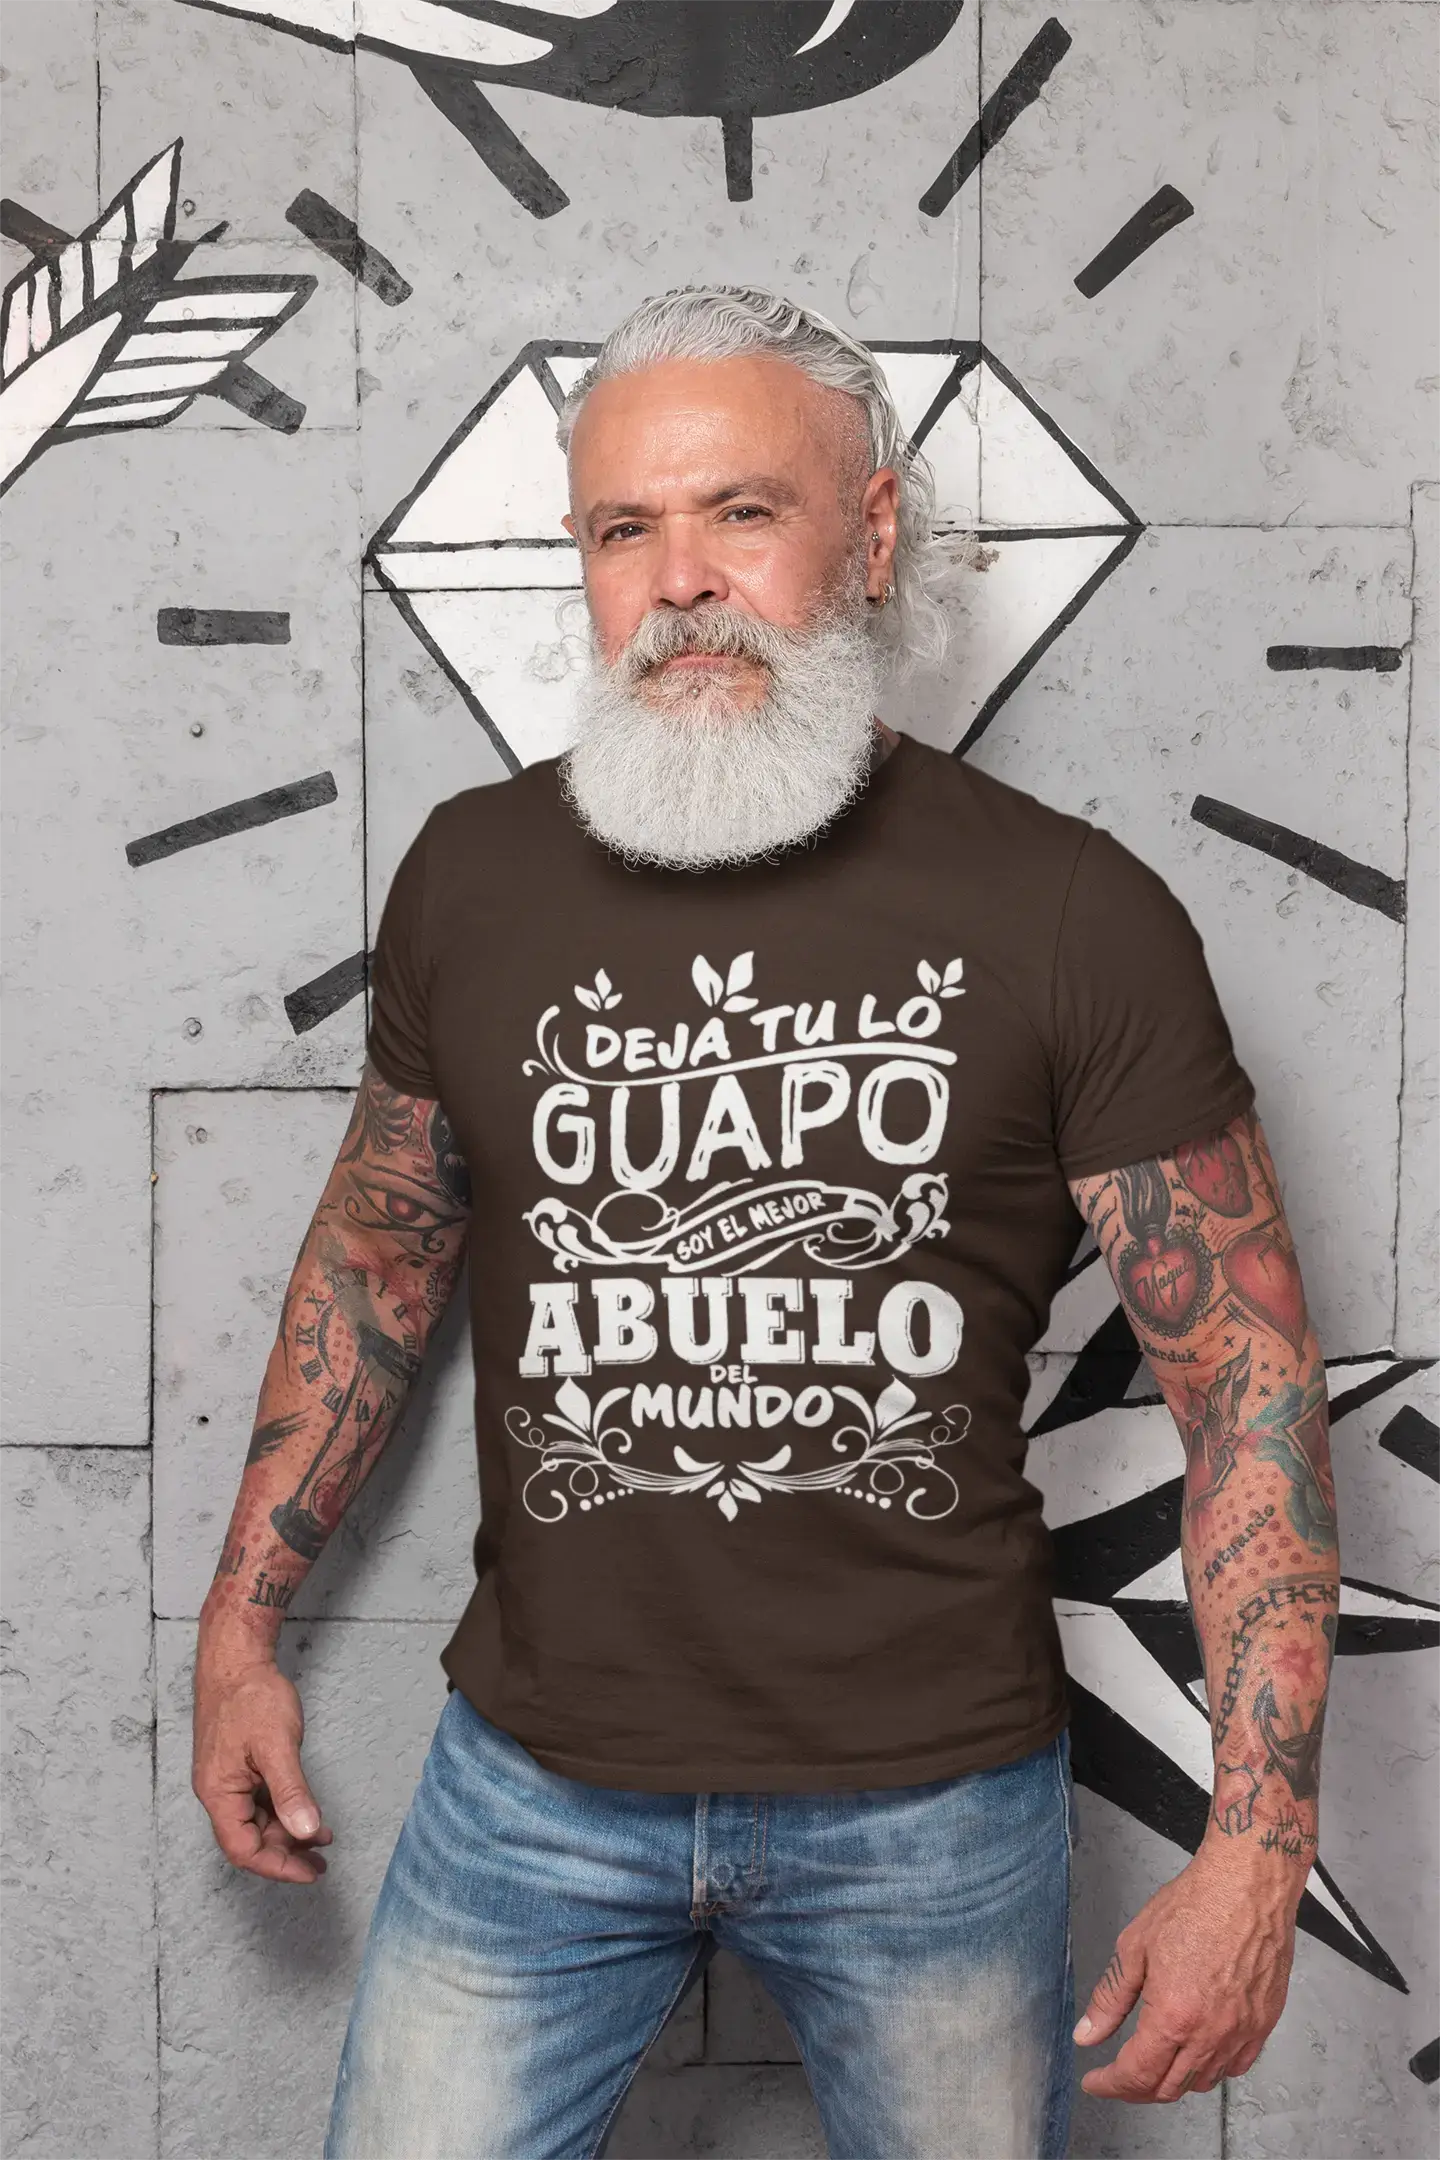 Ultrabasic® Homme T-Shirt Graphique Mejor Abuelo Del Mundo Anniversaire génial Chemise